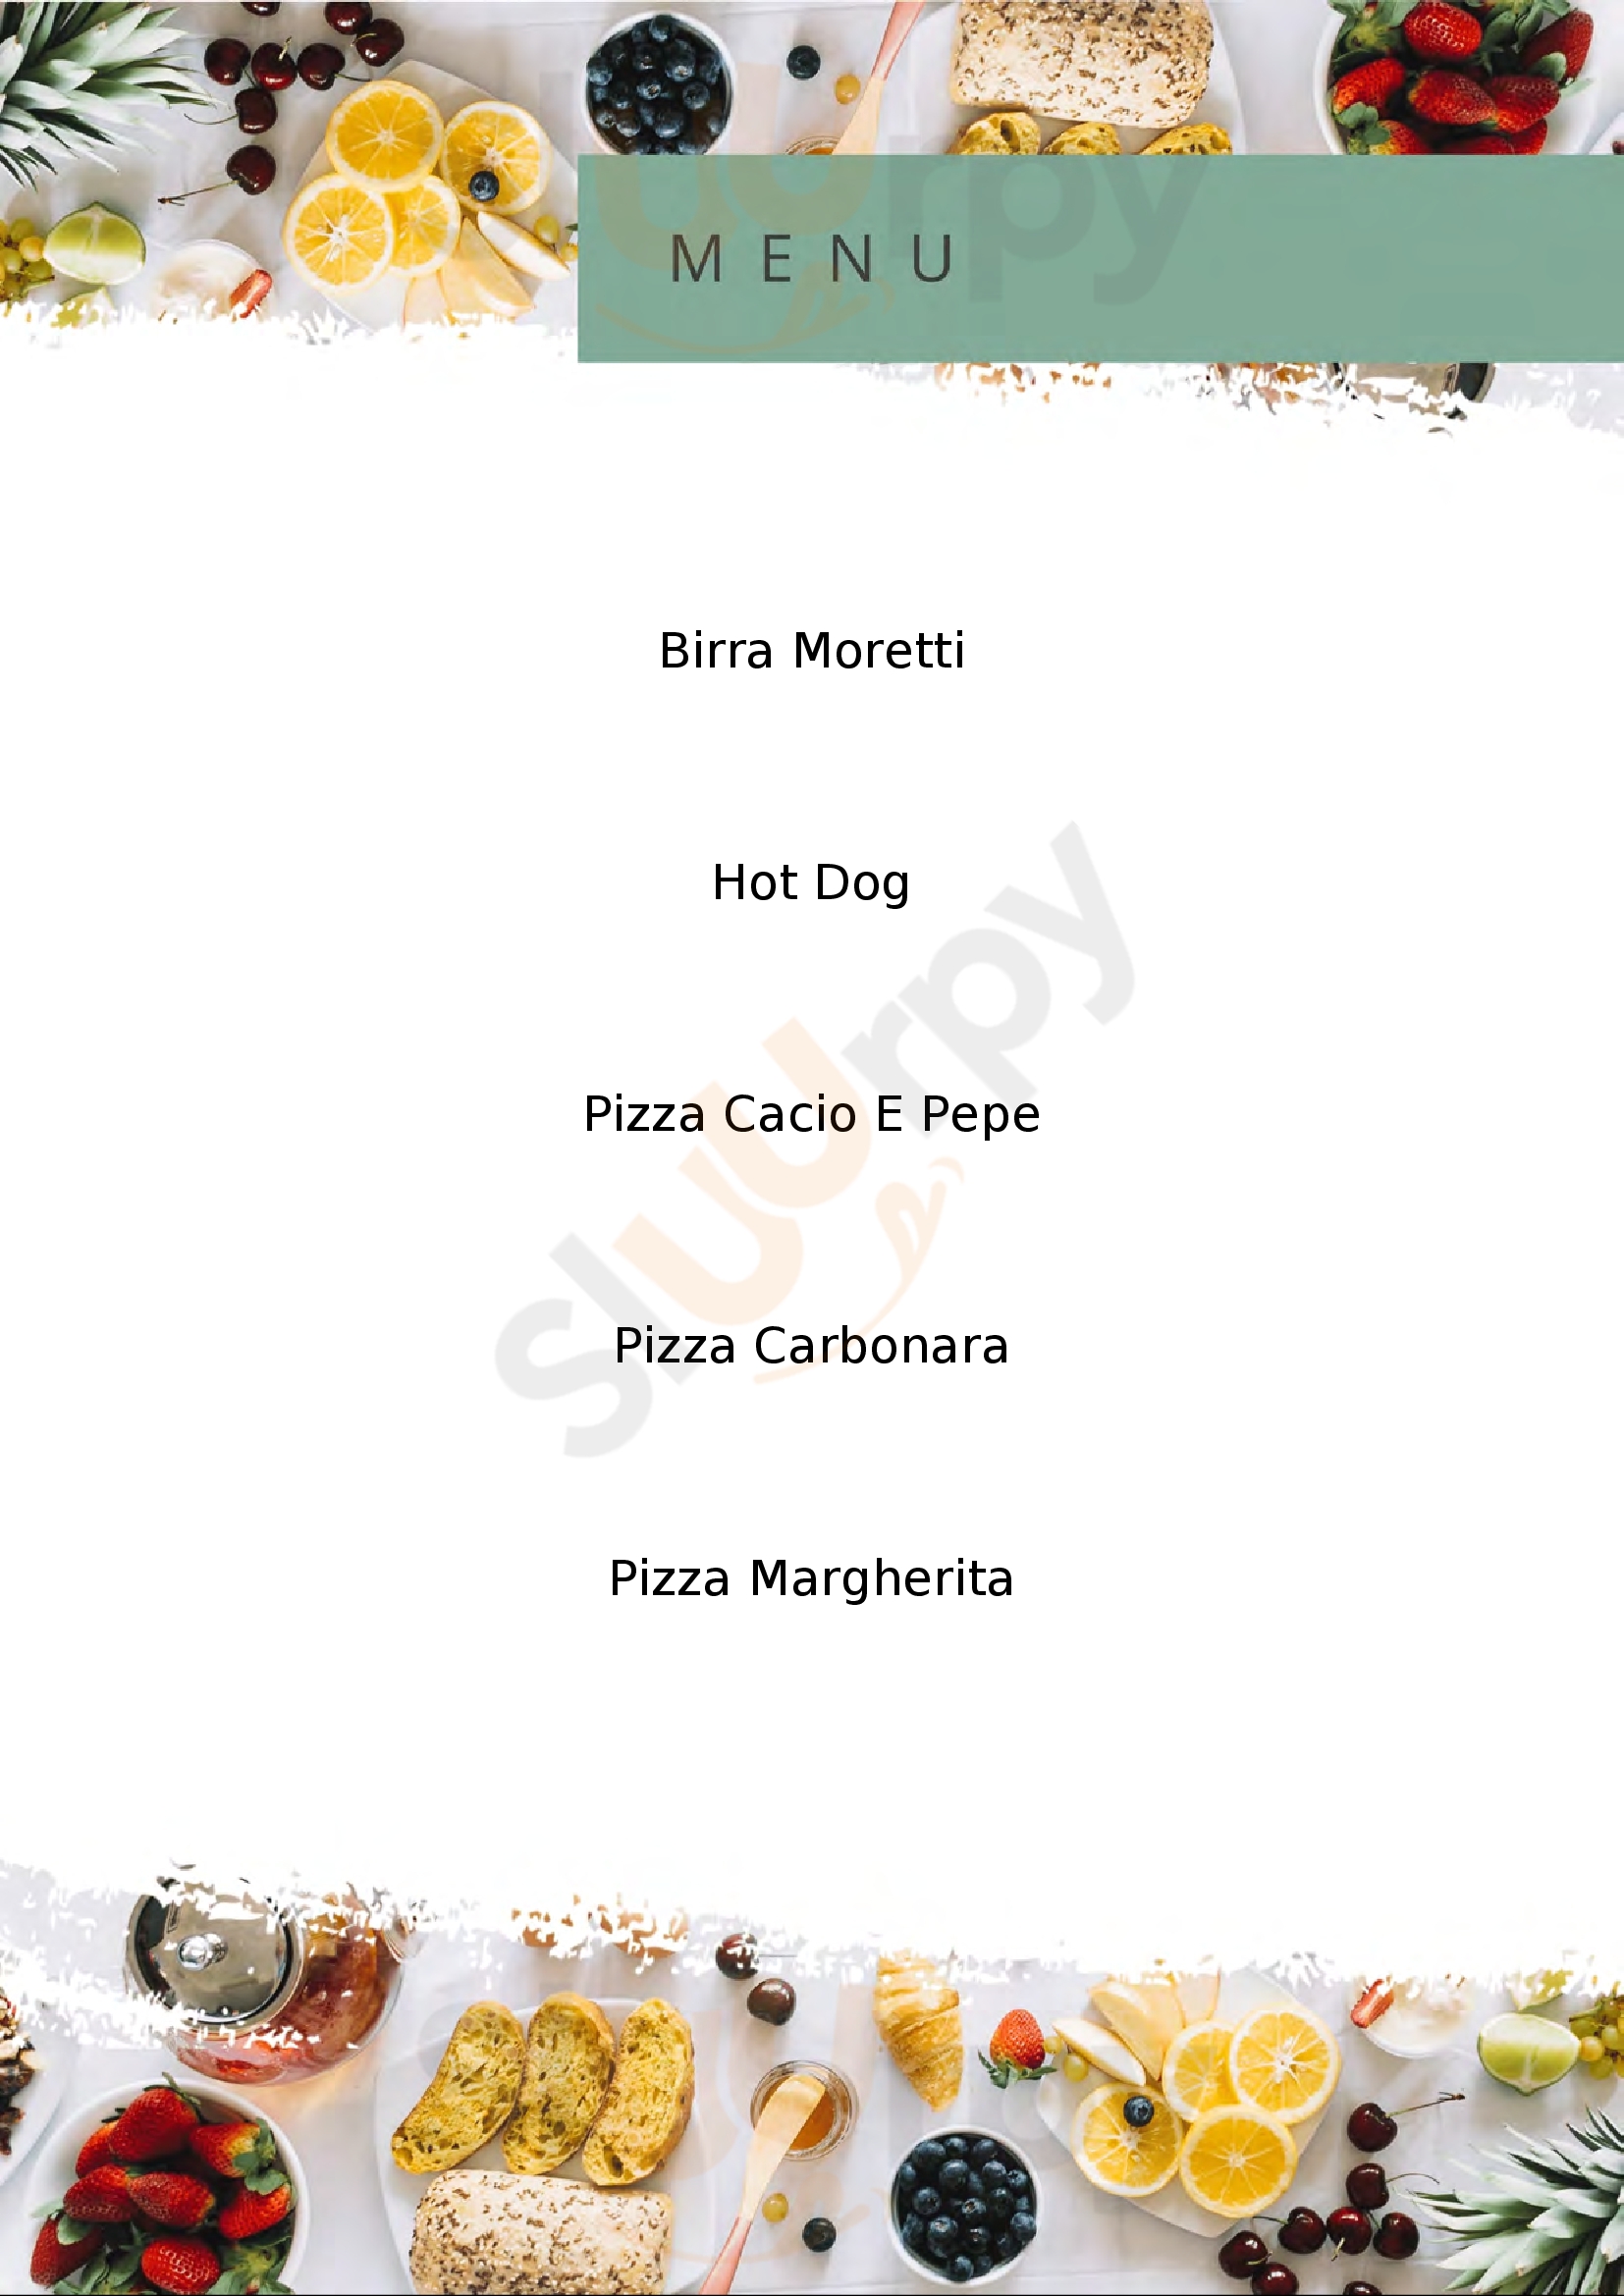 Baldini Pizza SNC Viterbo menù 1 pagina